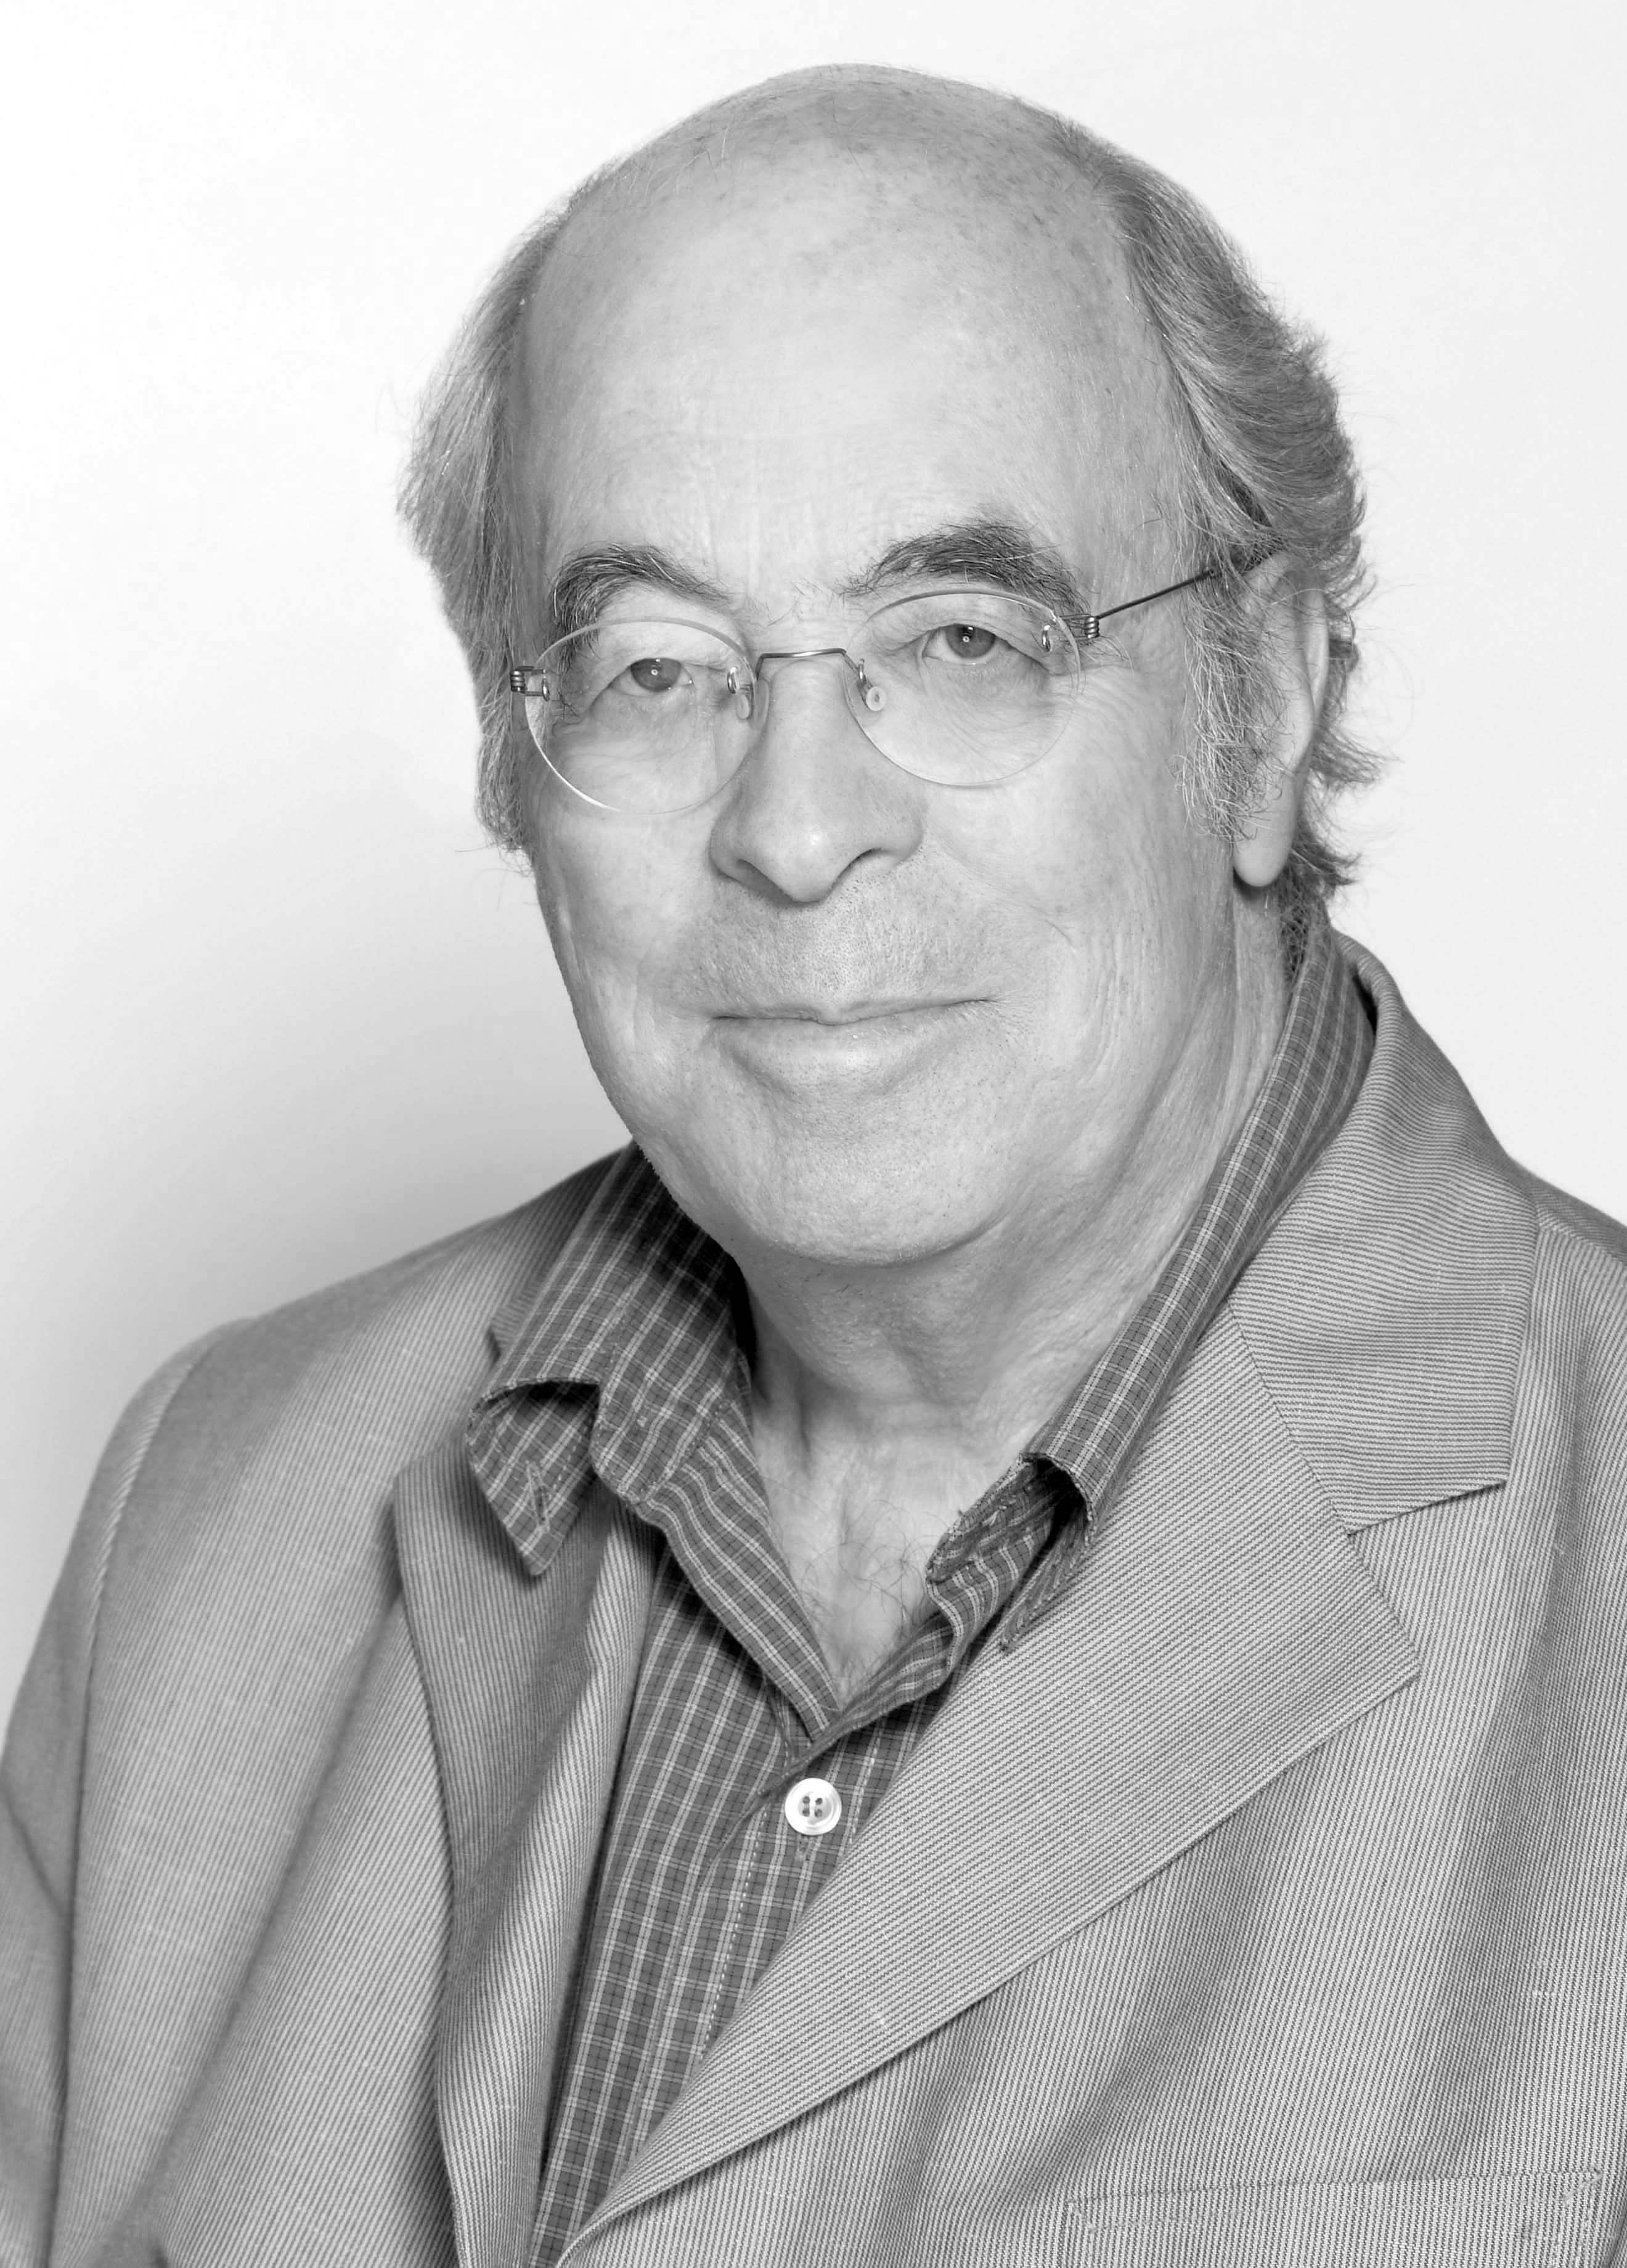 Photographie du visage de Jean-Claude Corbeil, prise par Bruno Desjardins le 23 mai 2005.